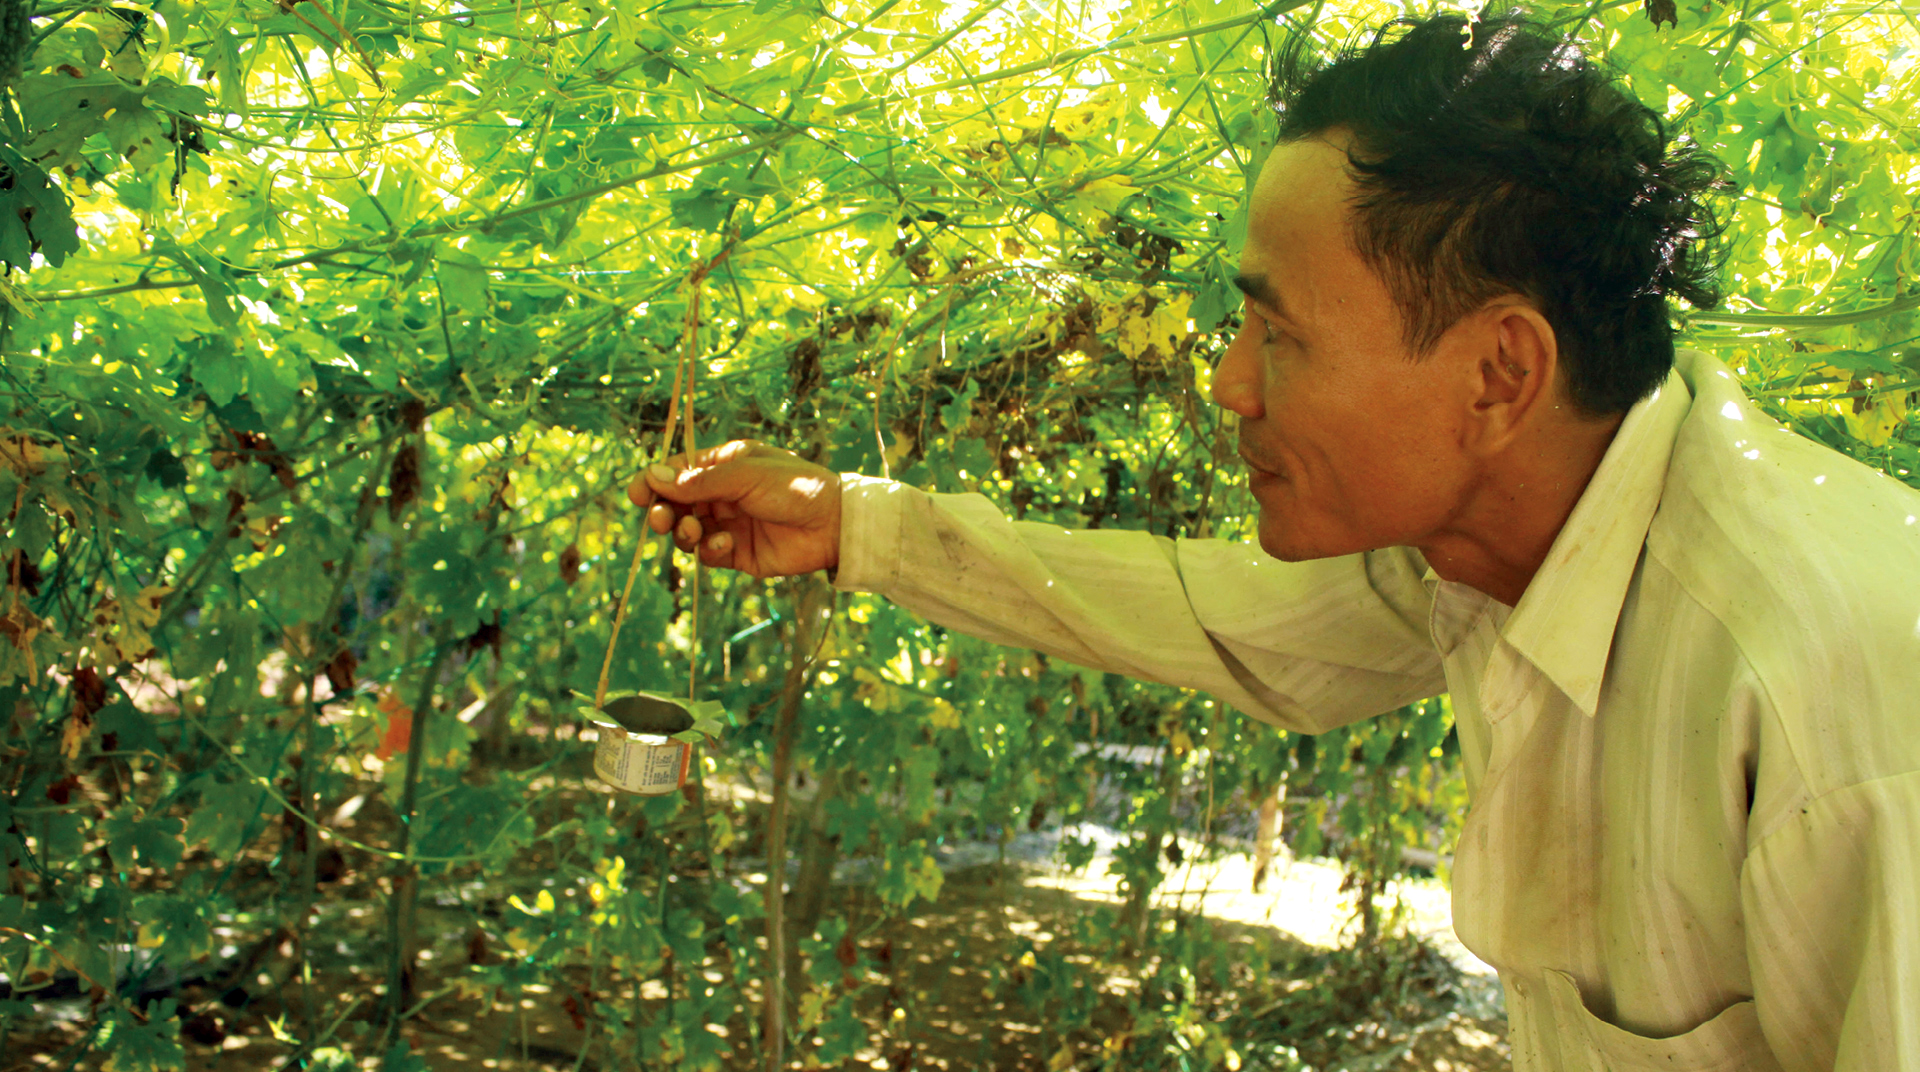 Nông dân tự làm bẫy sinh học, trừ sâu thảo mộc để trồng rau hữu cơ ảnh 5